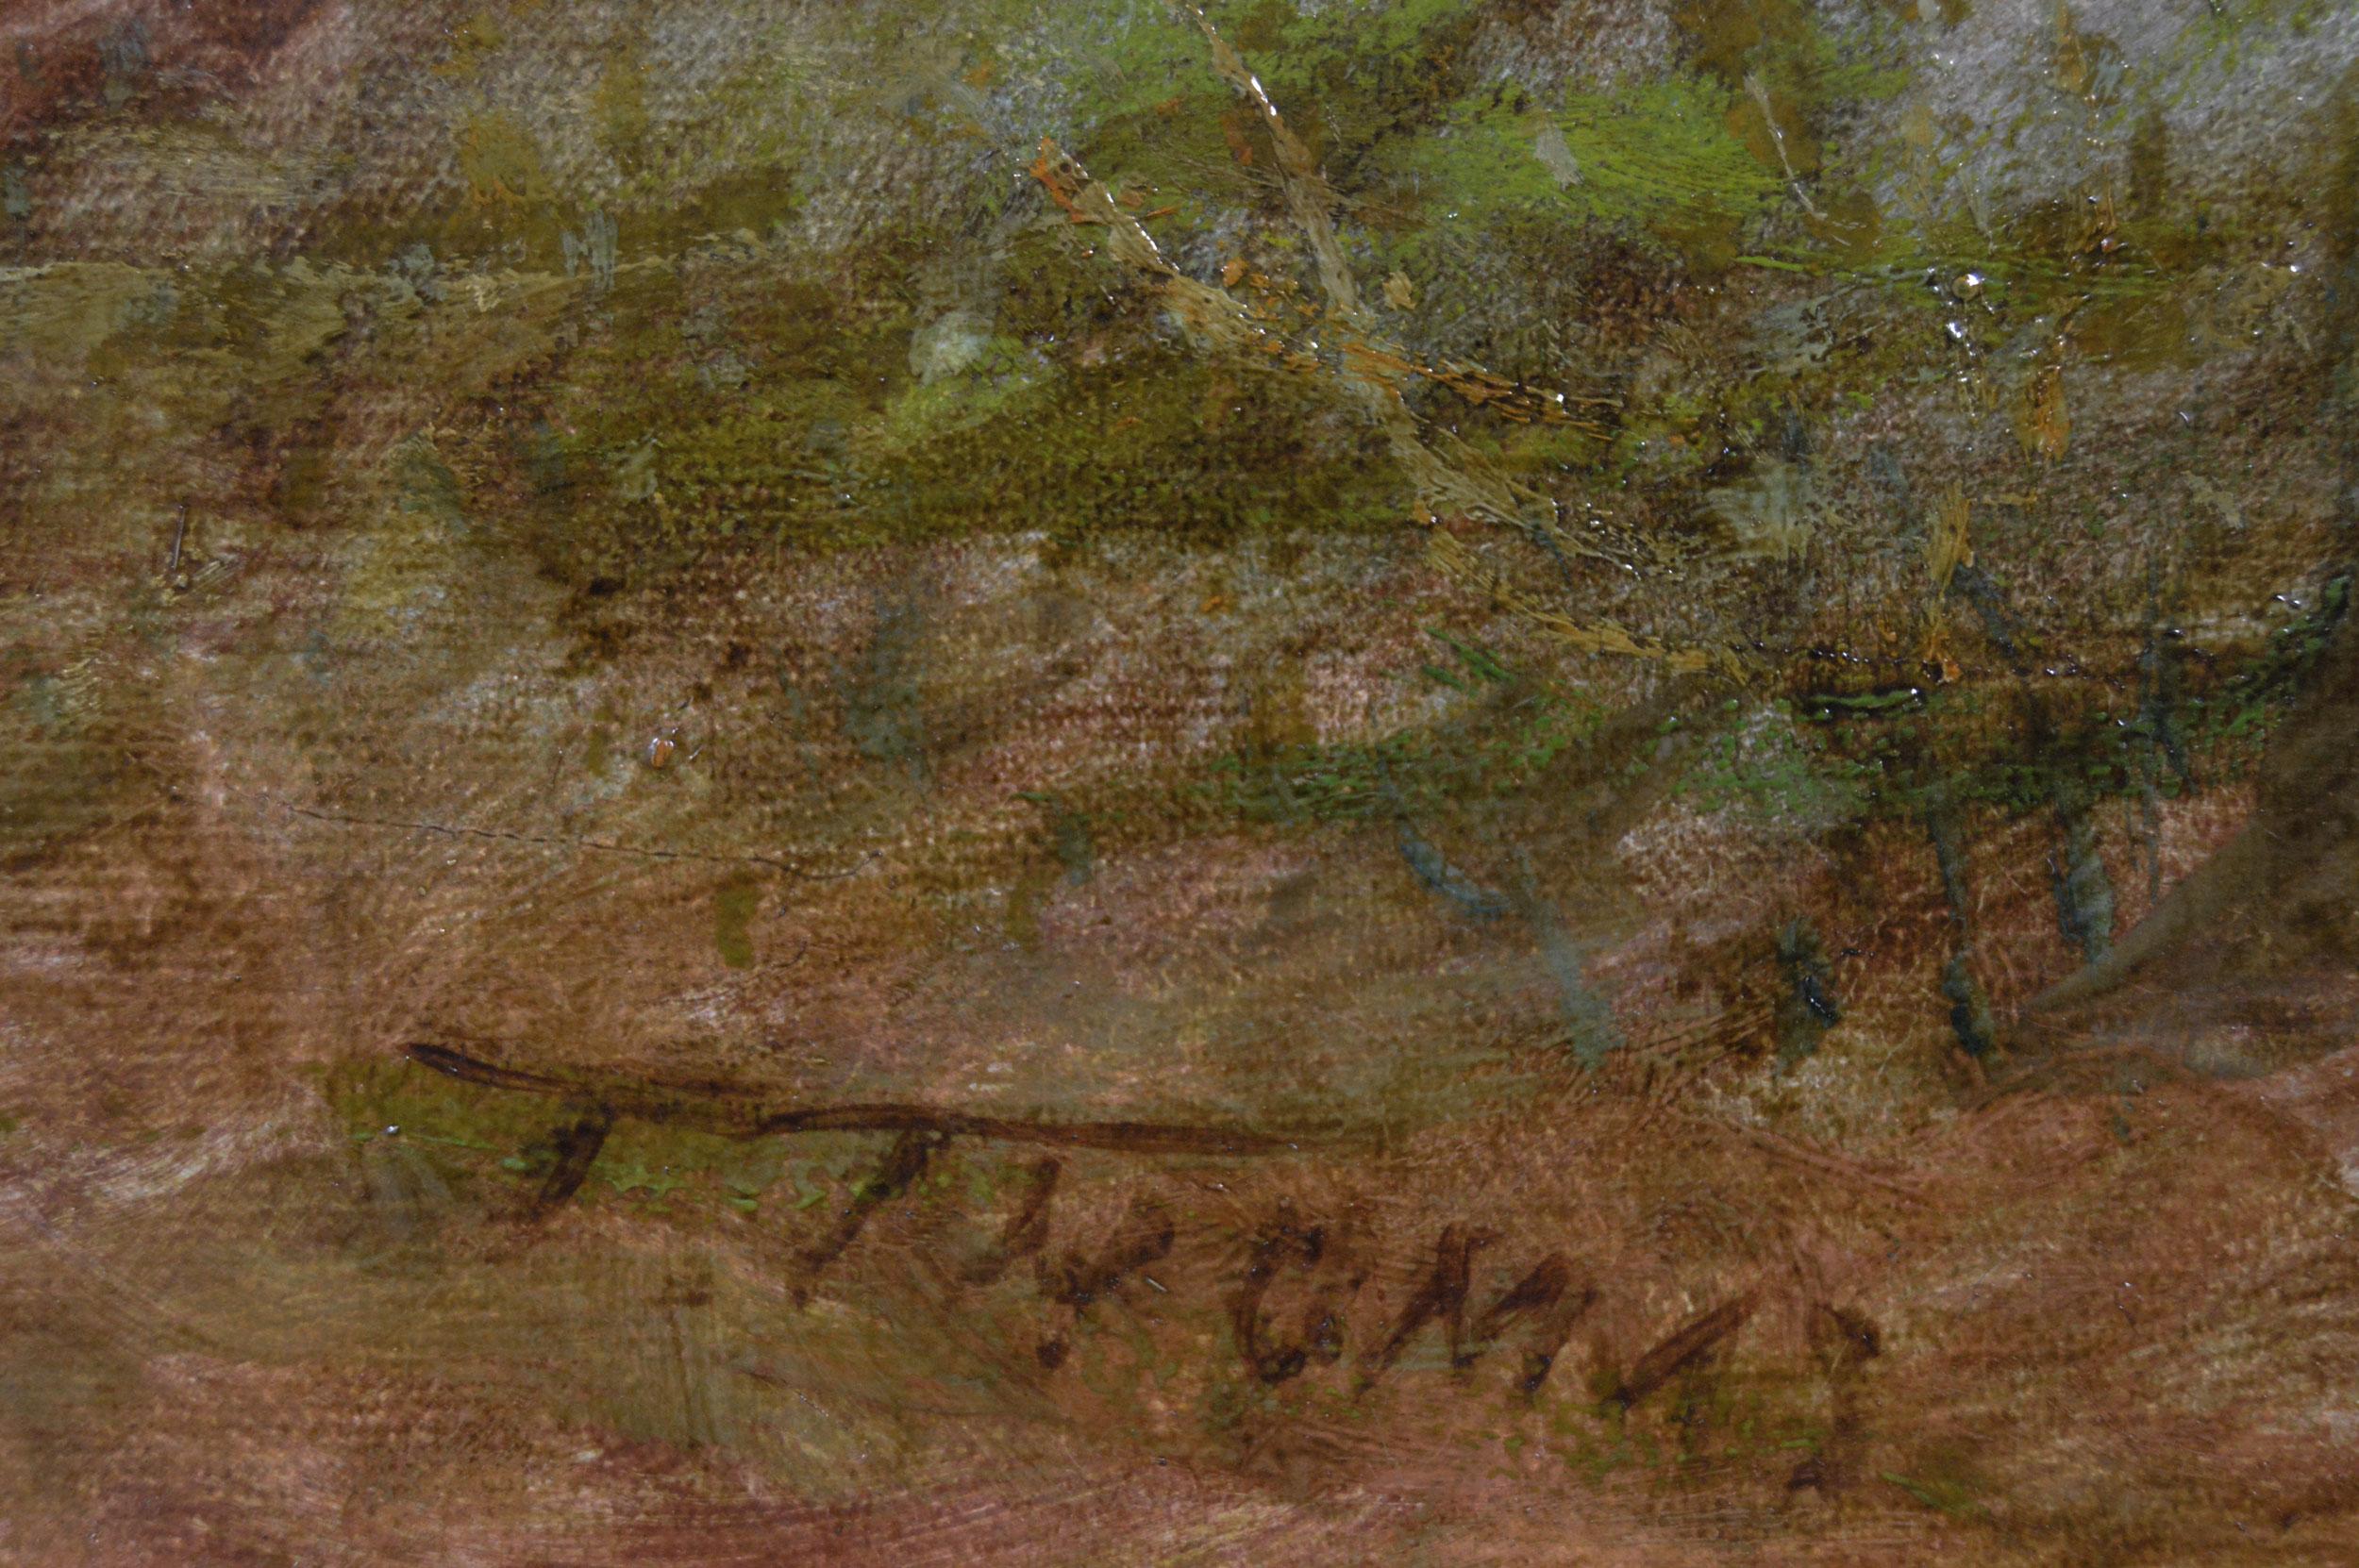 Thomas
Britannique, (1831-1913)
Une idylle champêtre
Huile sur toile, signée
Taille de l'image : 19.25 pouces x 29.25 pouces 
Dimensions, y compris le cadre : 28,75 pouces x 38,75 pouces

Une agréable peinture de paysage de Thomas Thomas